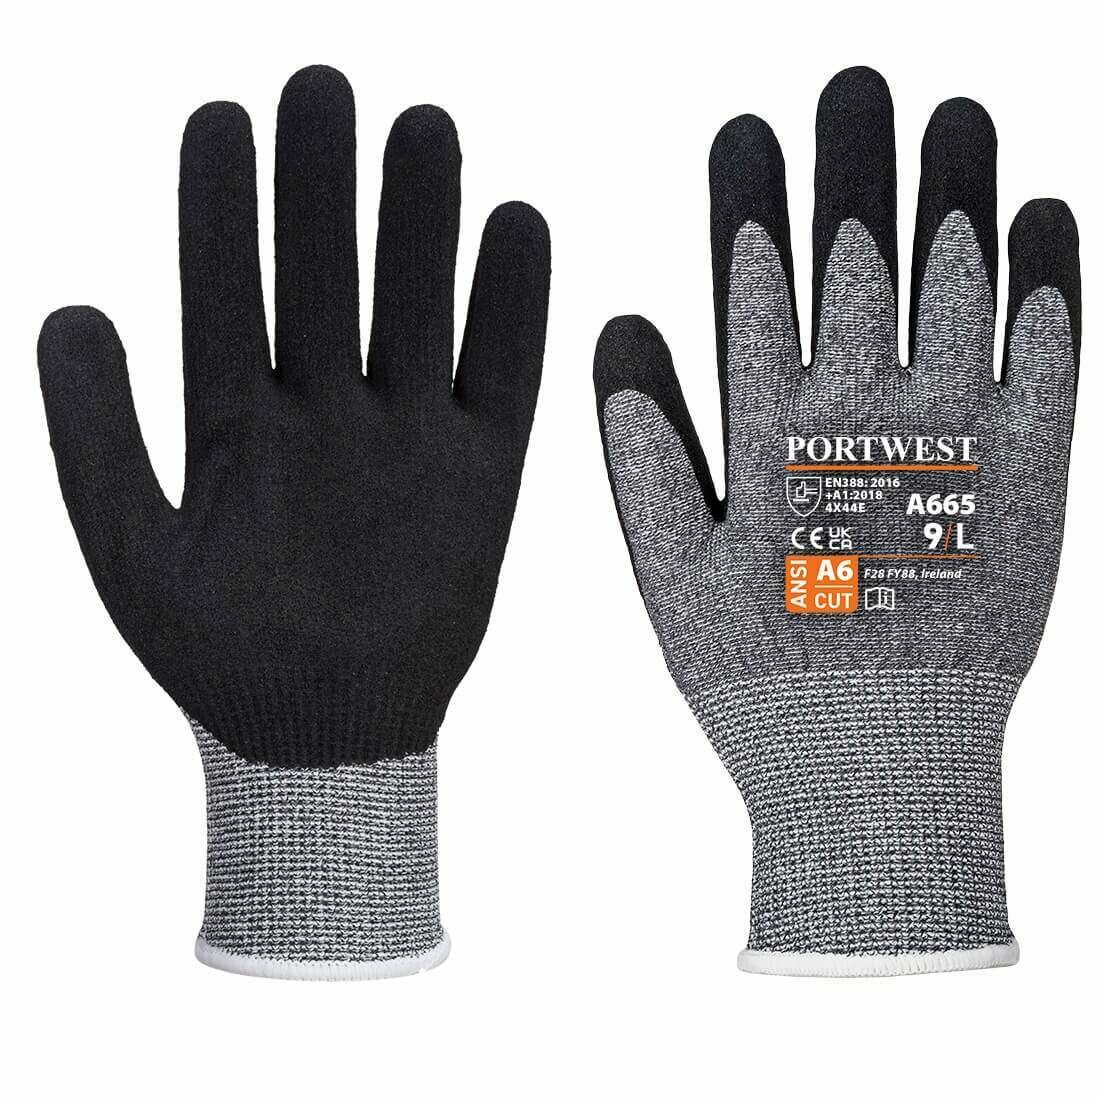 VHR Advanced Cut Glove - Gloves - Apparel